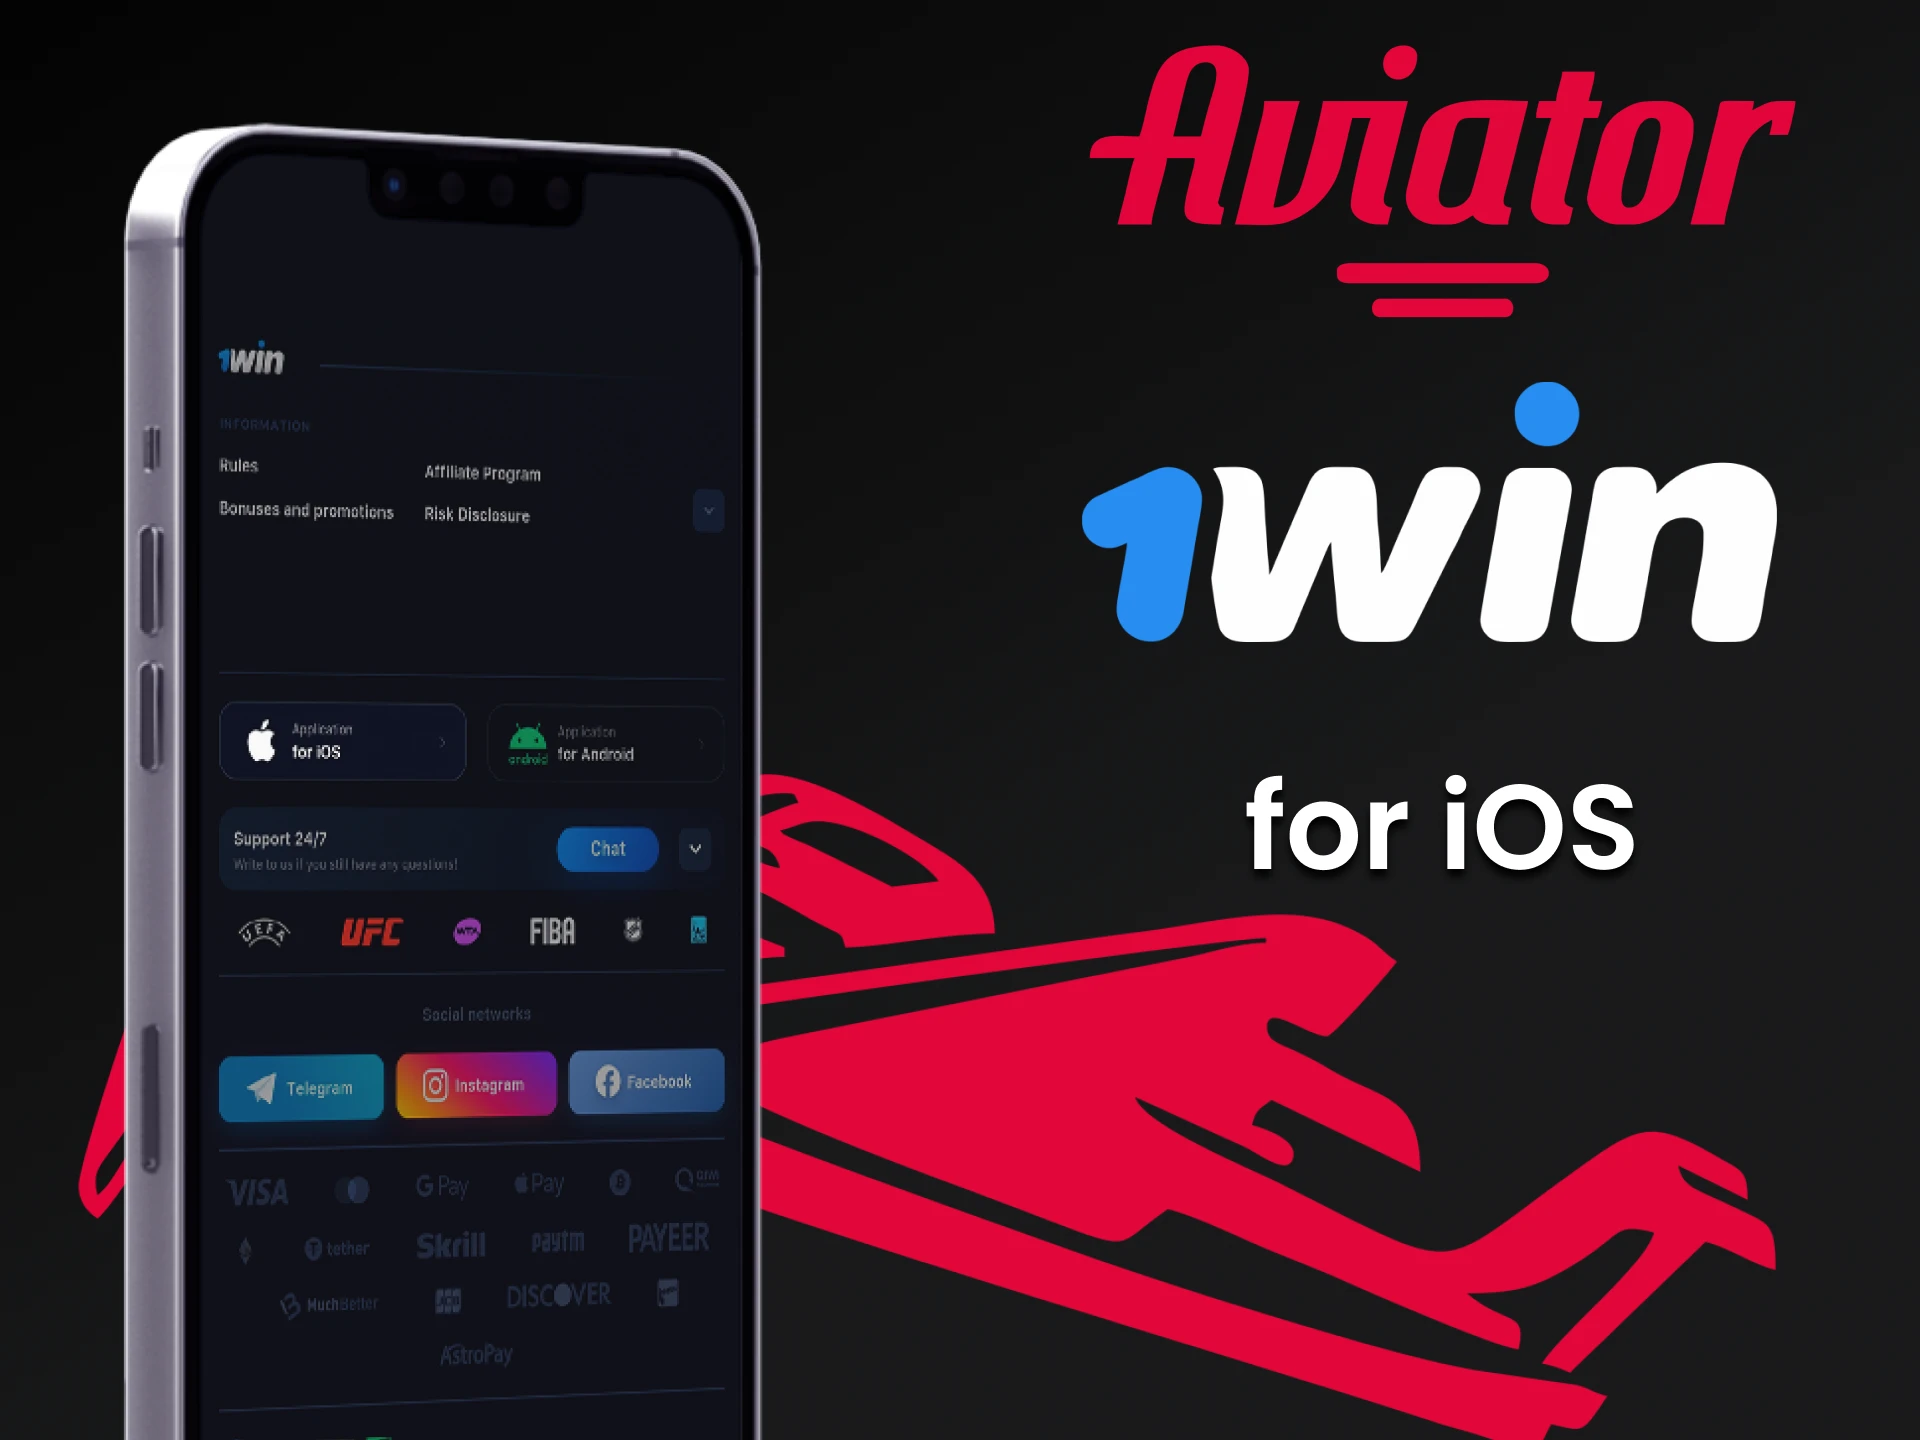 Jogue Aviator através do aplicativo 1win para iOS.